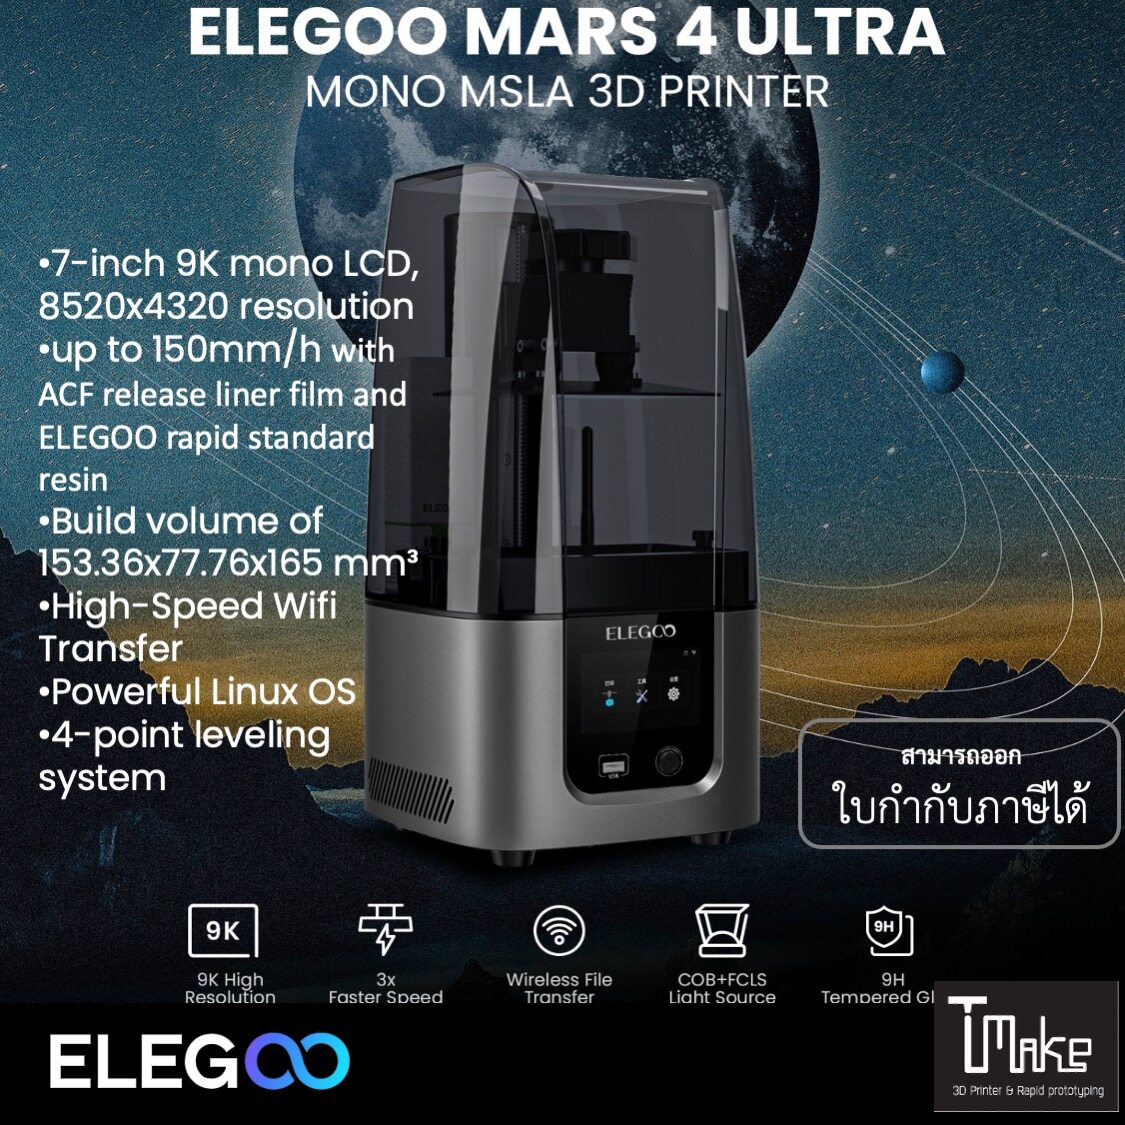 ELEGOO Mars 4 Max 6K Resin 3D Printer – ELEGOO EU